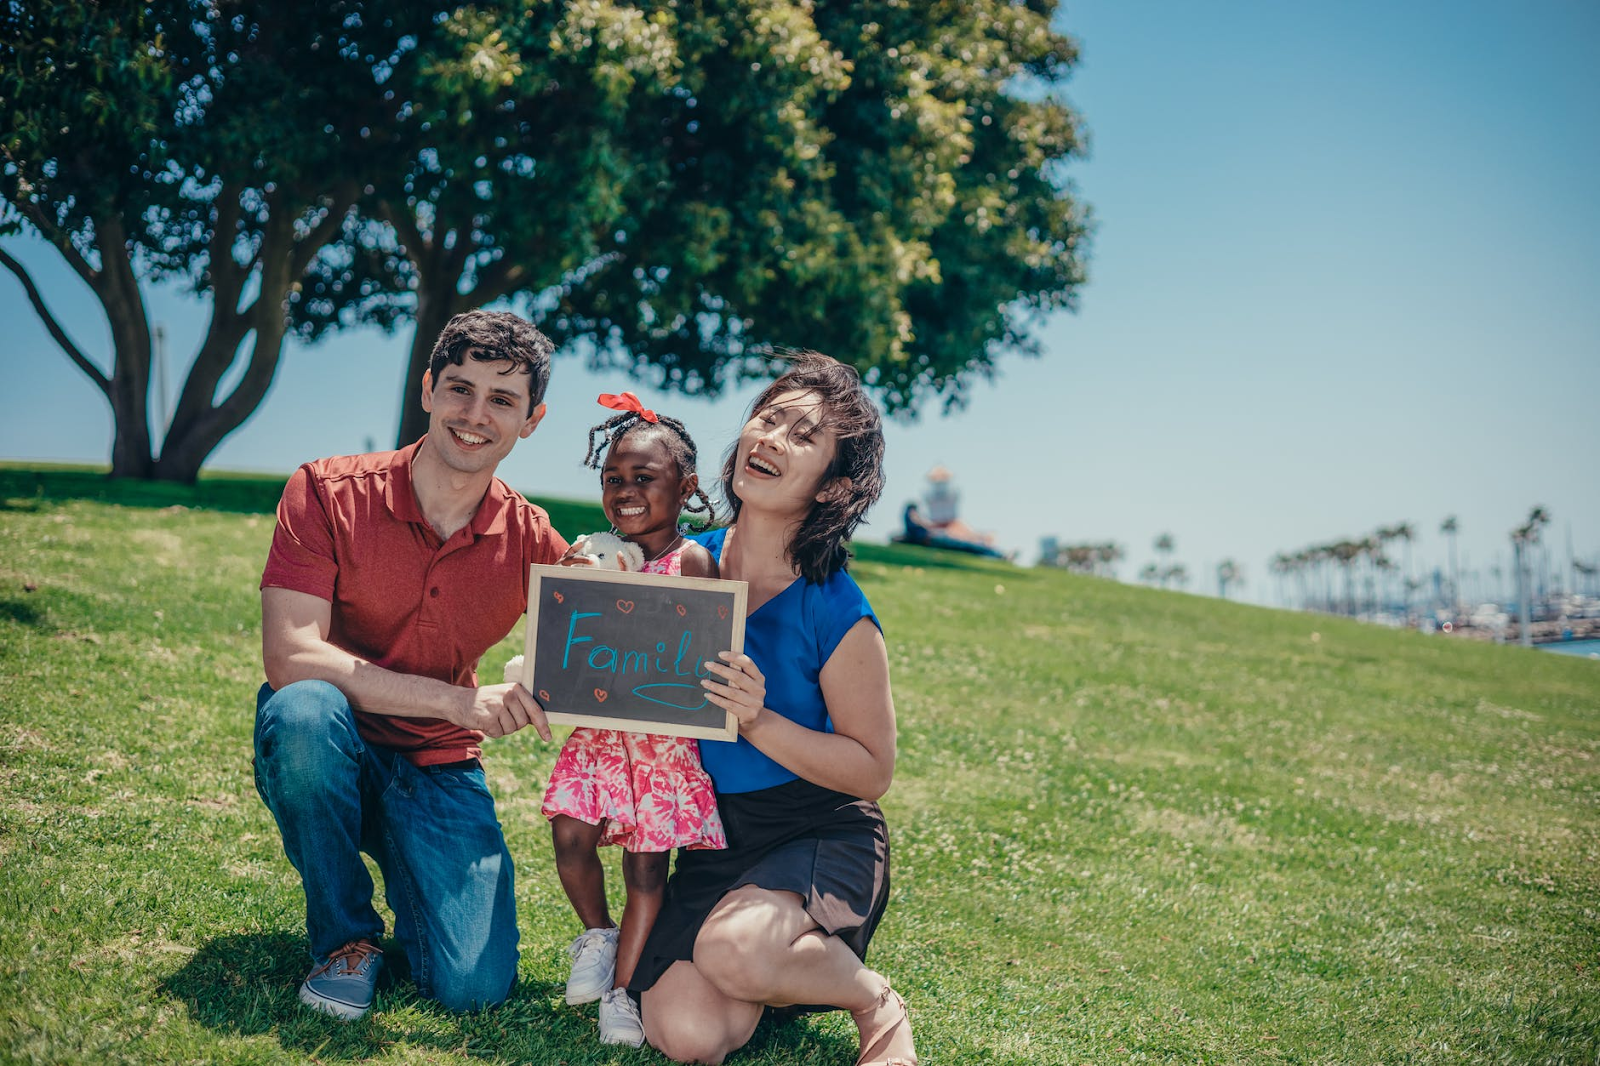 Pai, mãe e filha reunidos no parque segurando uma lousa com a palavra "family", família em inglês.